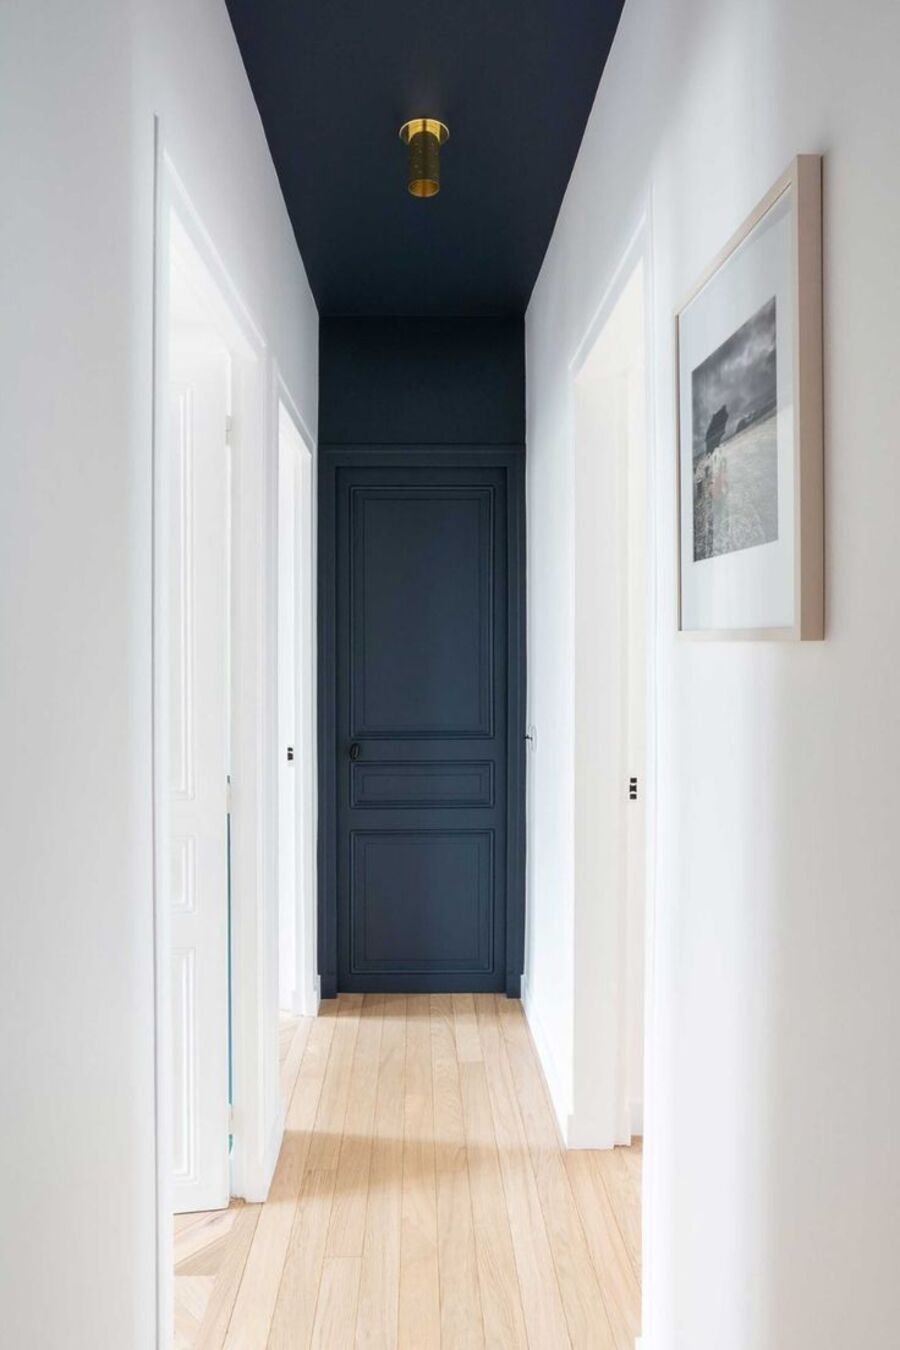 Largo pasillo de muros blancos y piso de madera clara. Tanto el techo como la puerta y muro del fondo está pintados en azul marino.